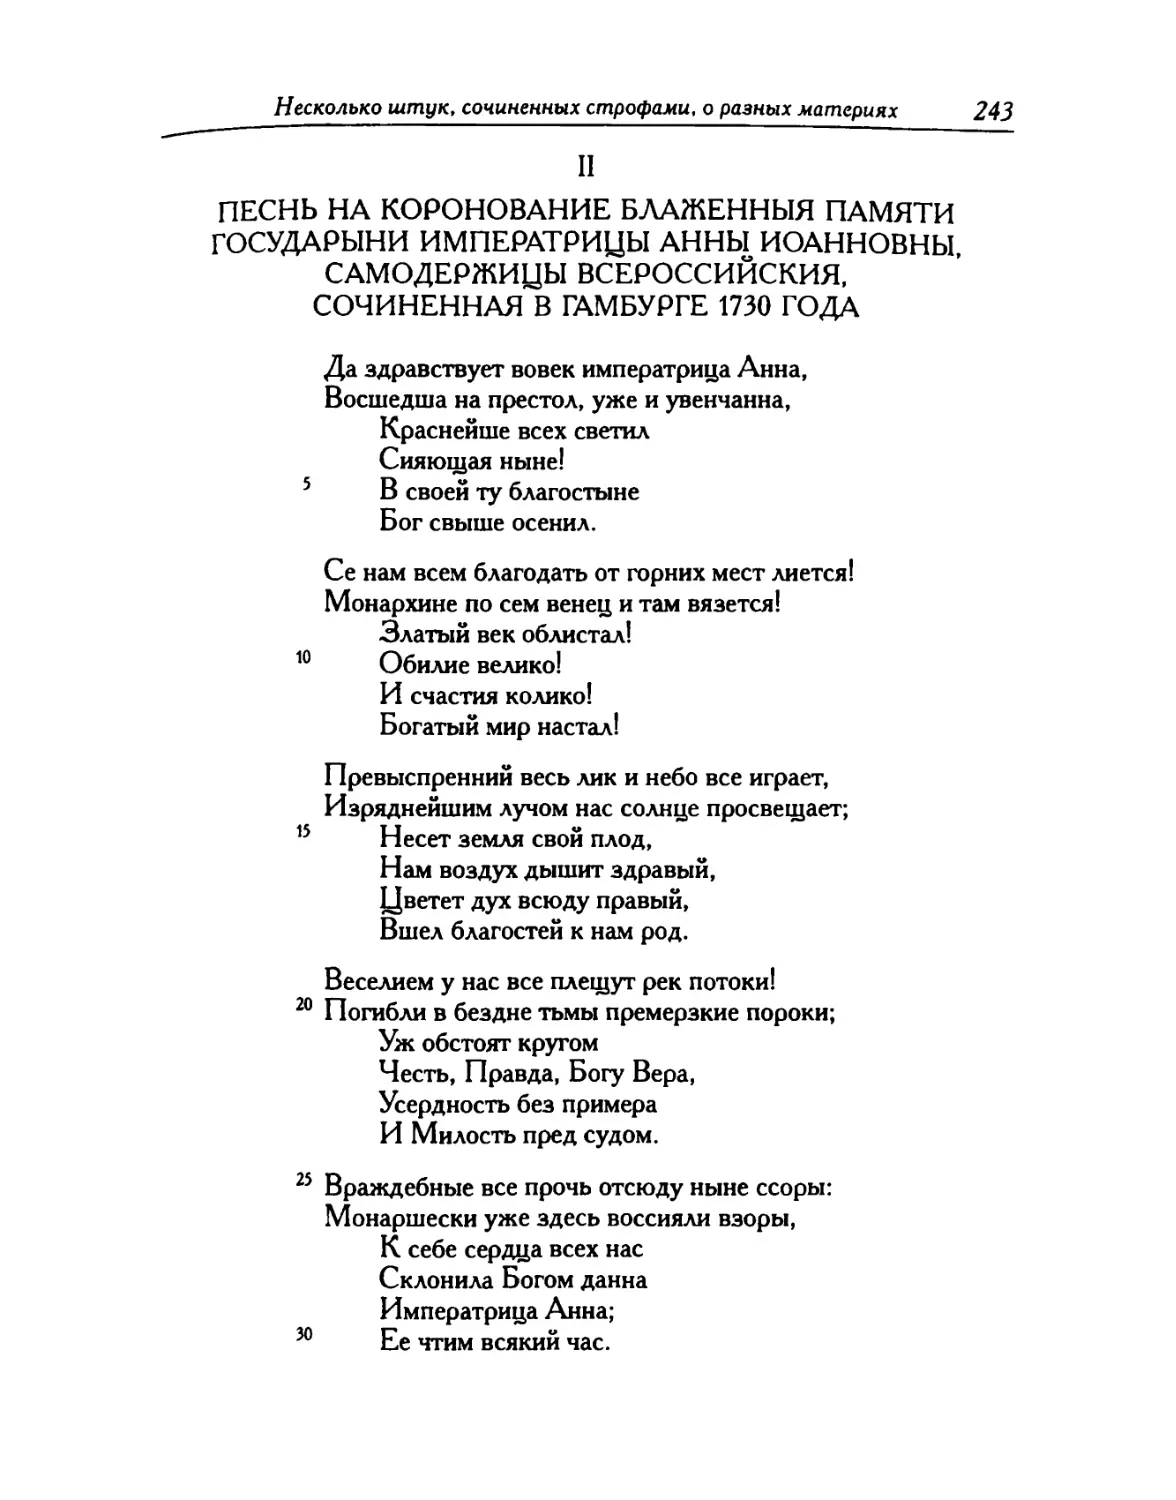 II. Песнь на коронование блаженныя памяти государыни императрицы Анны Иоанновны, самодержицы Всероссийския, сочиненная в Гамбурге 1730 года